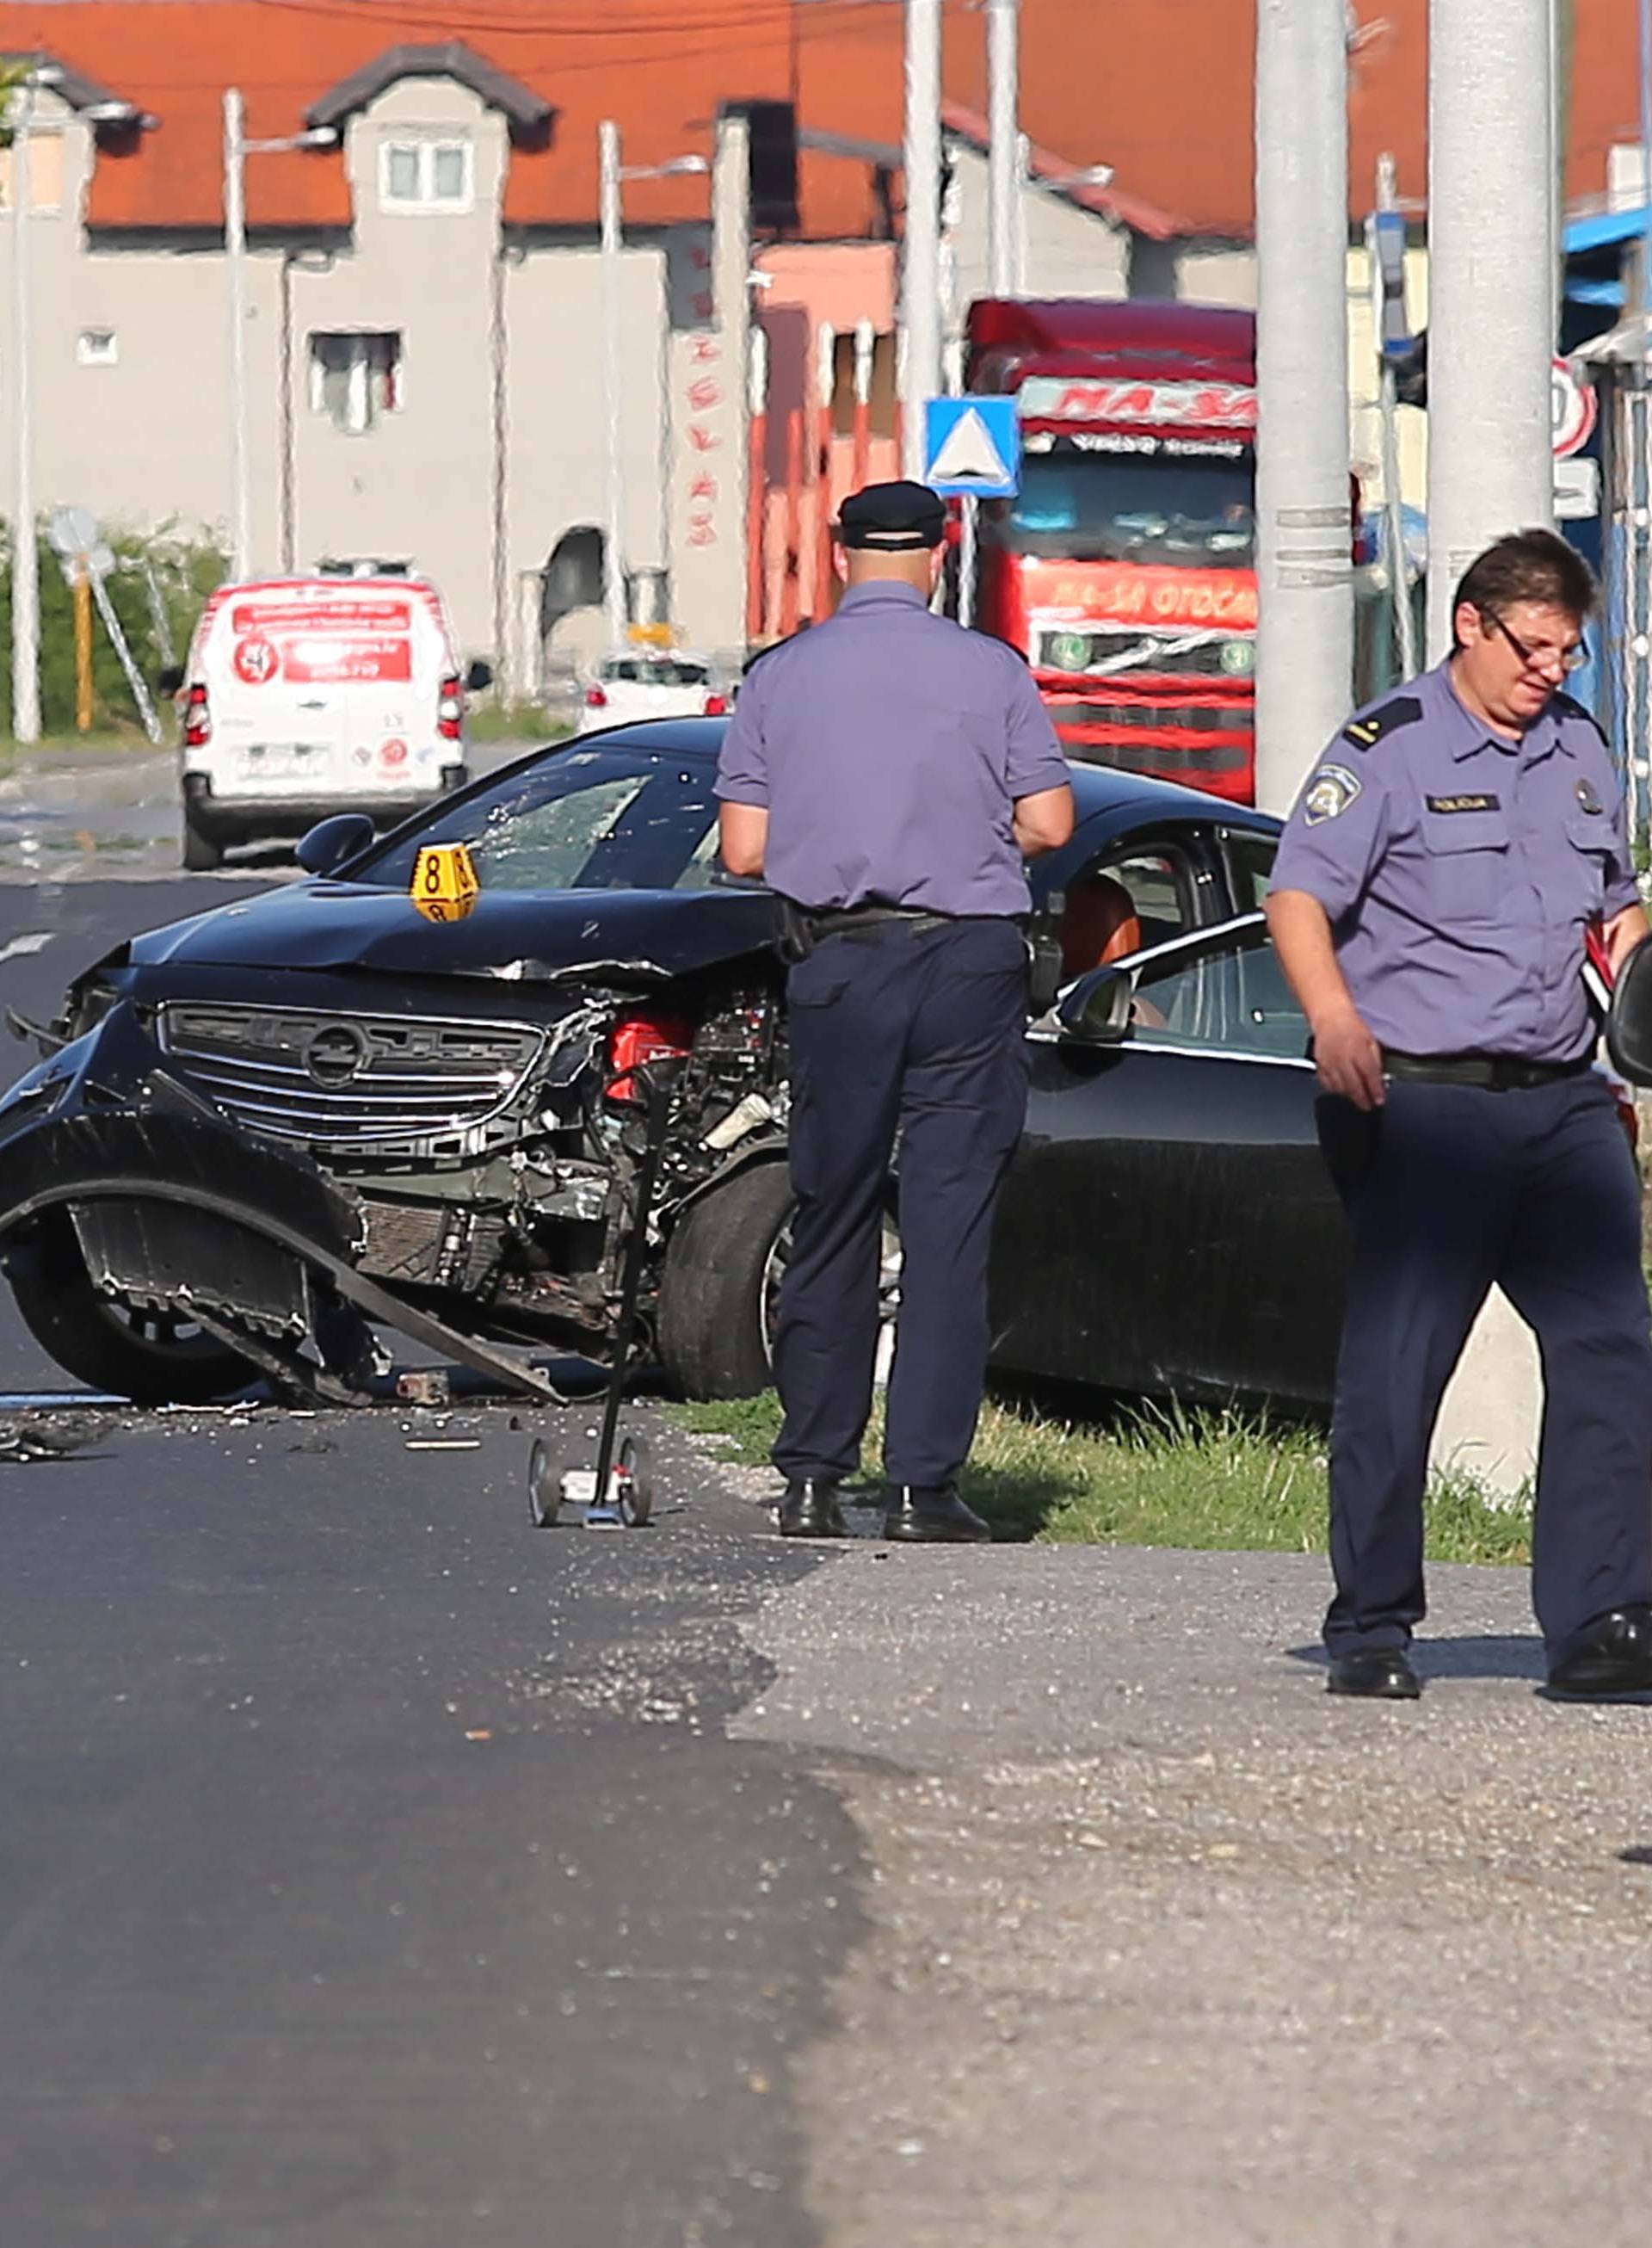 Teška prometna nesreća u Zagrebu: Jedna osoba mrtva